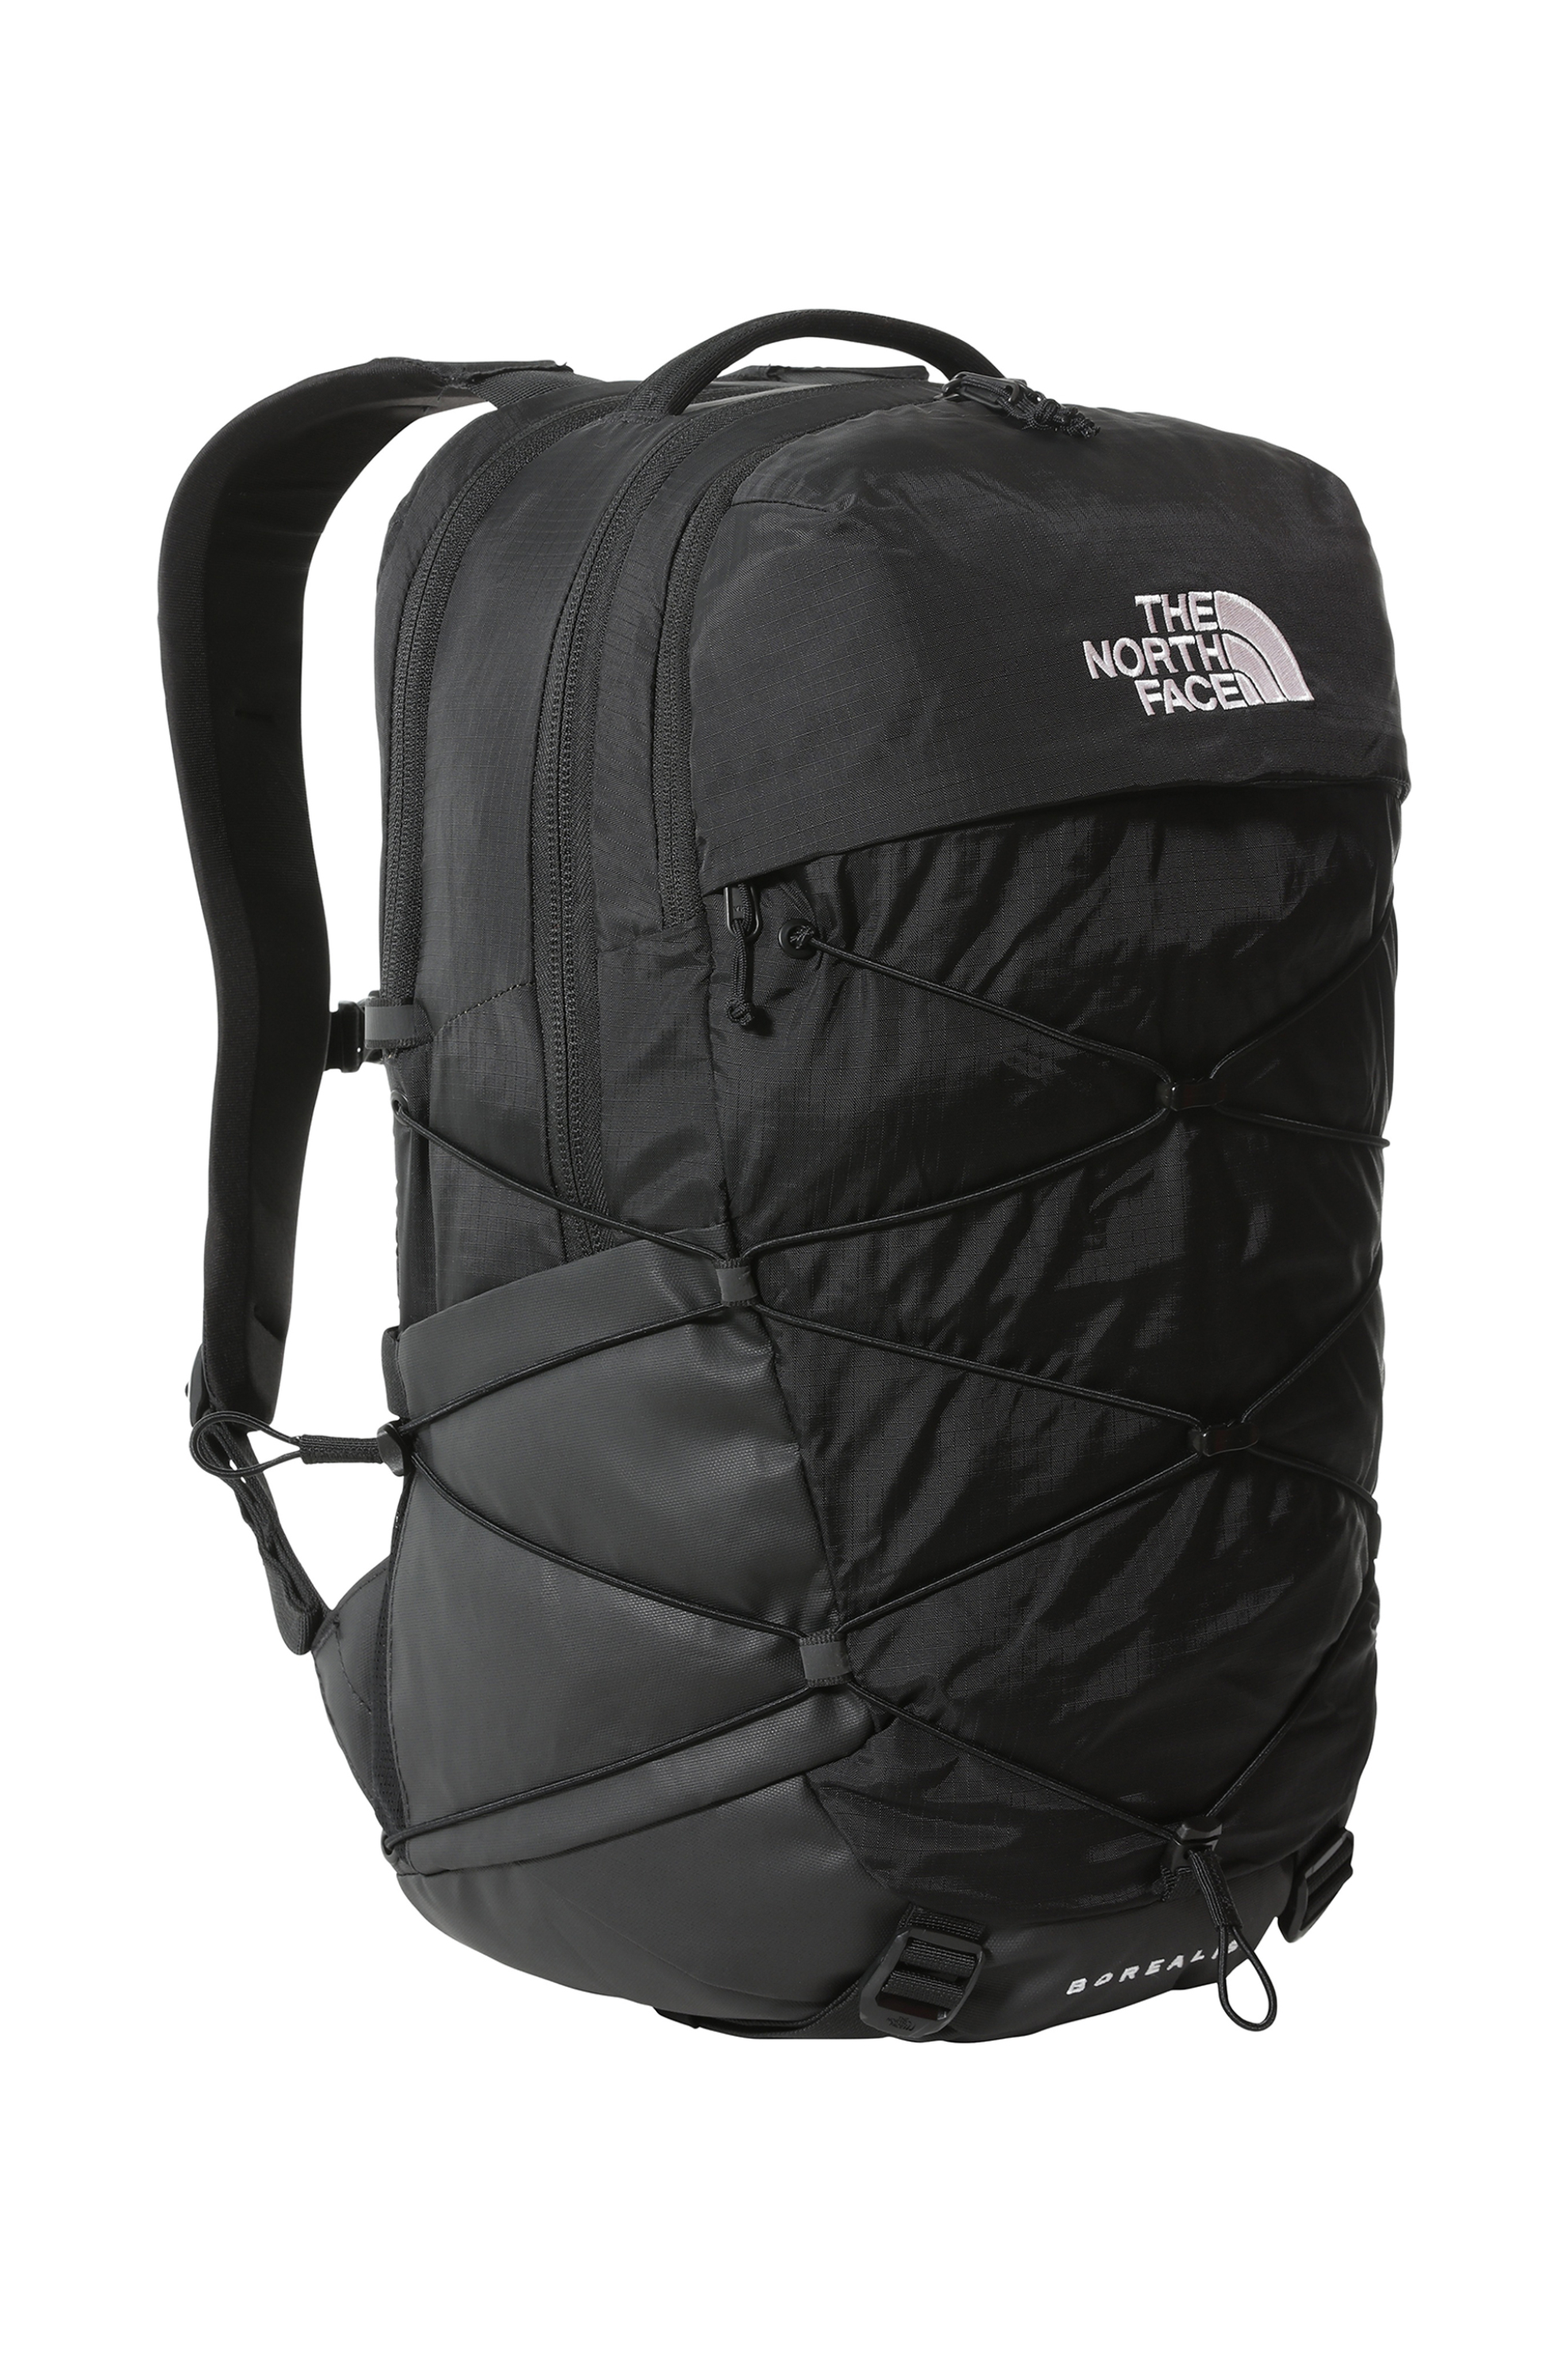 Ανδρική Μόδα > Ανδρικές Τσάντες > Ανδρικά Σακίδια & Backpacks The North Face unisex backpack με logo print "Borealis" - NF0A52SEKX71 Μαύρο